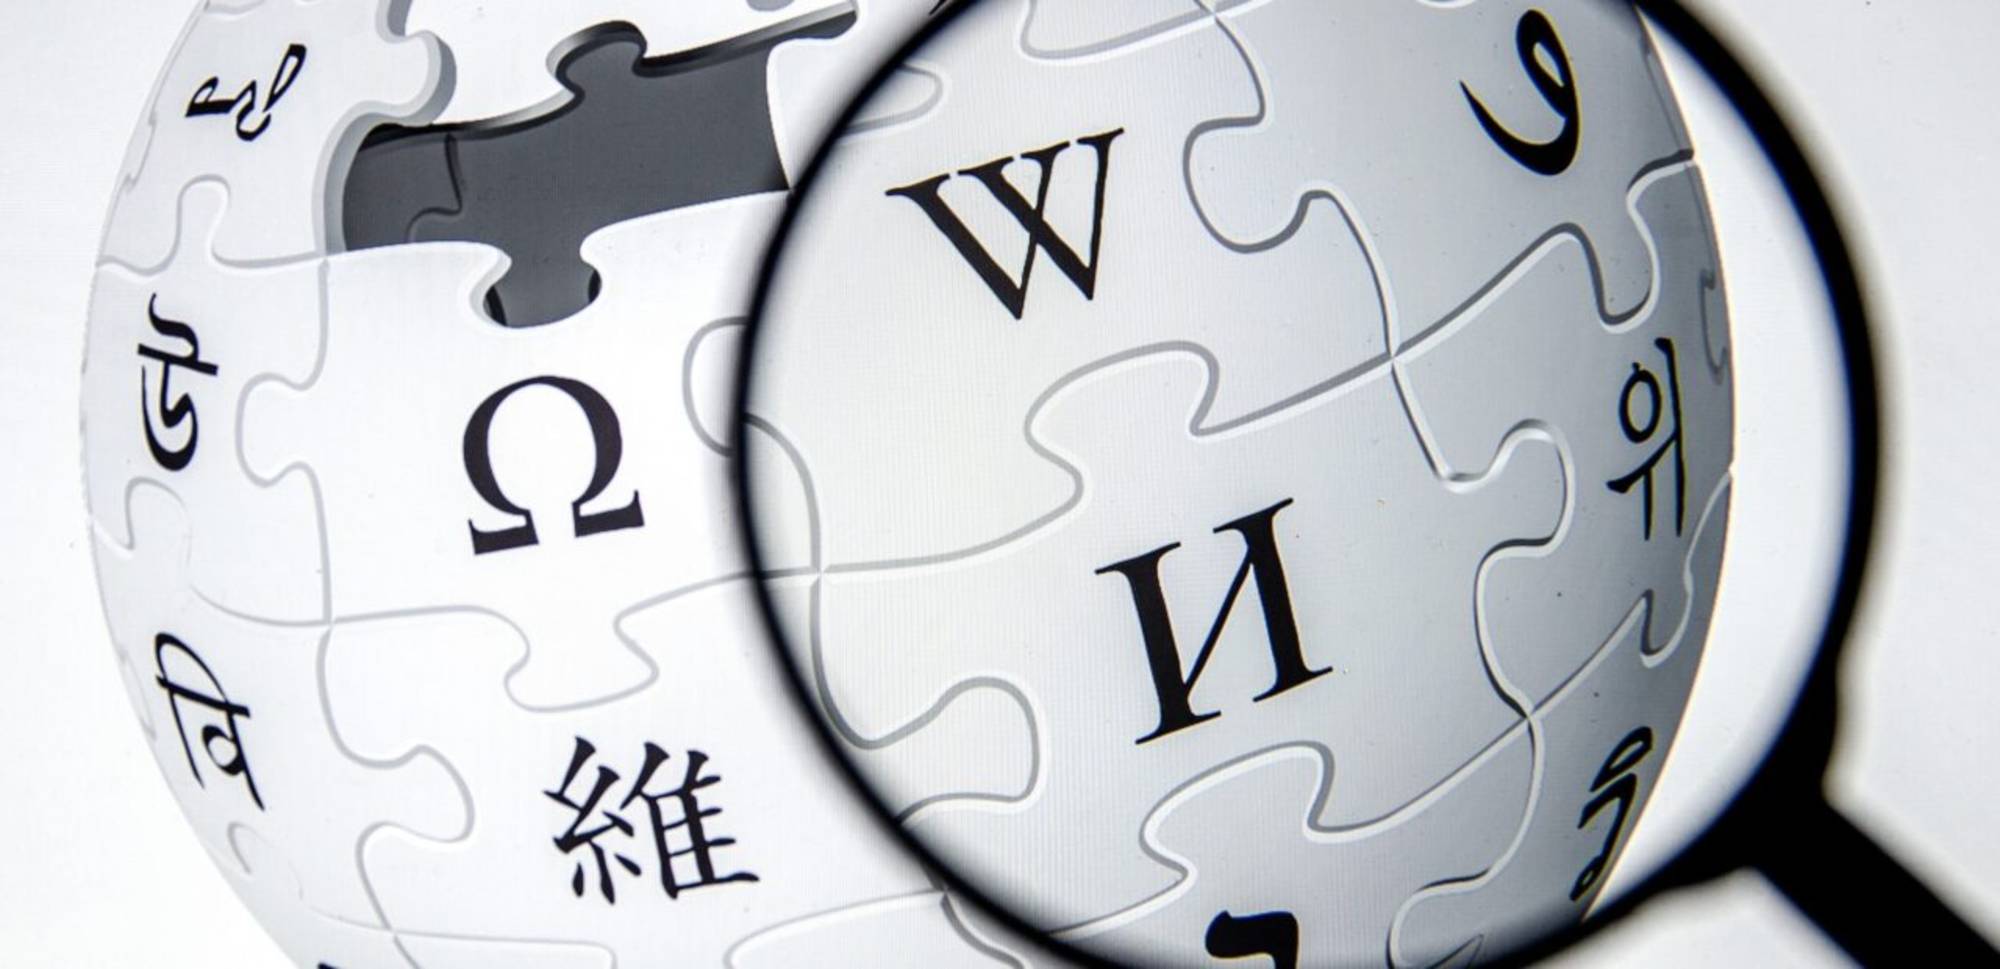 logo de wikipedia con una lupa